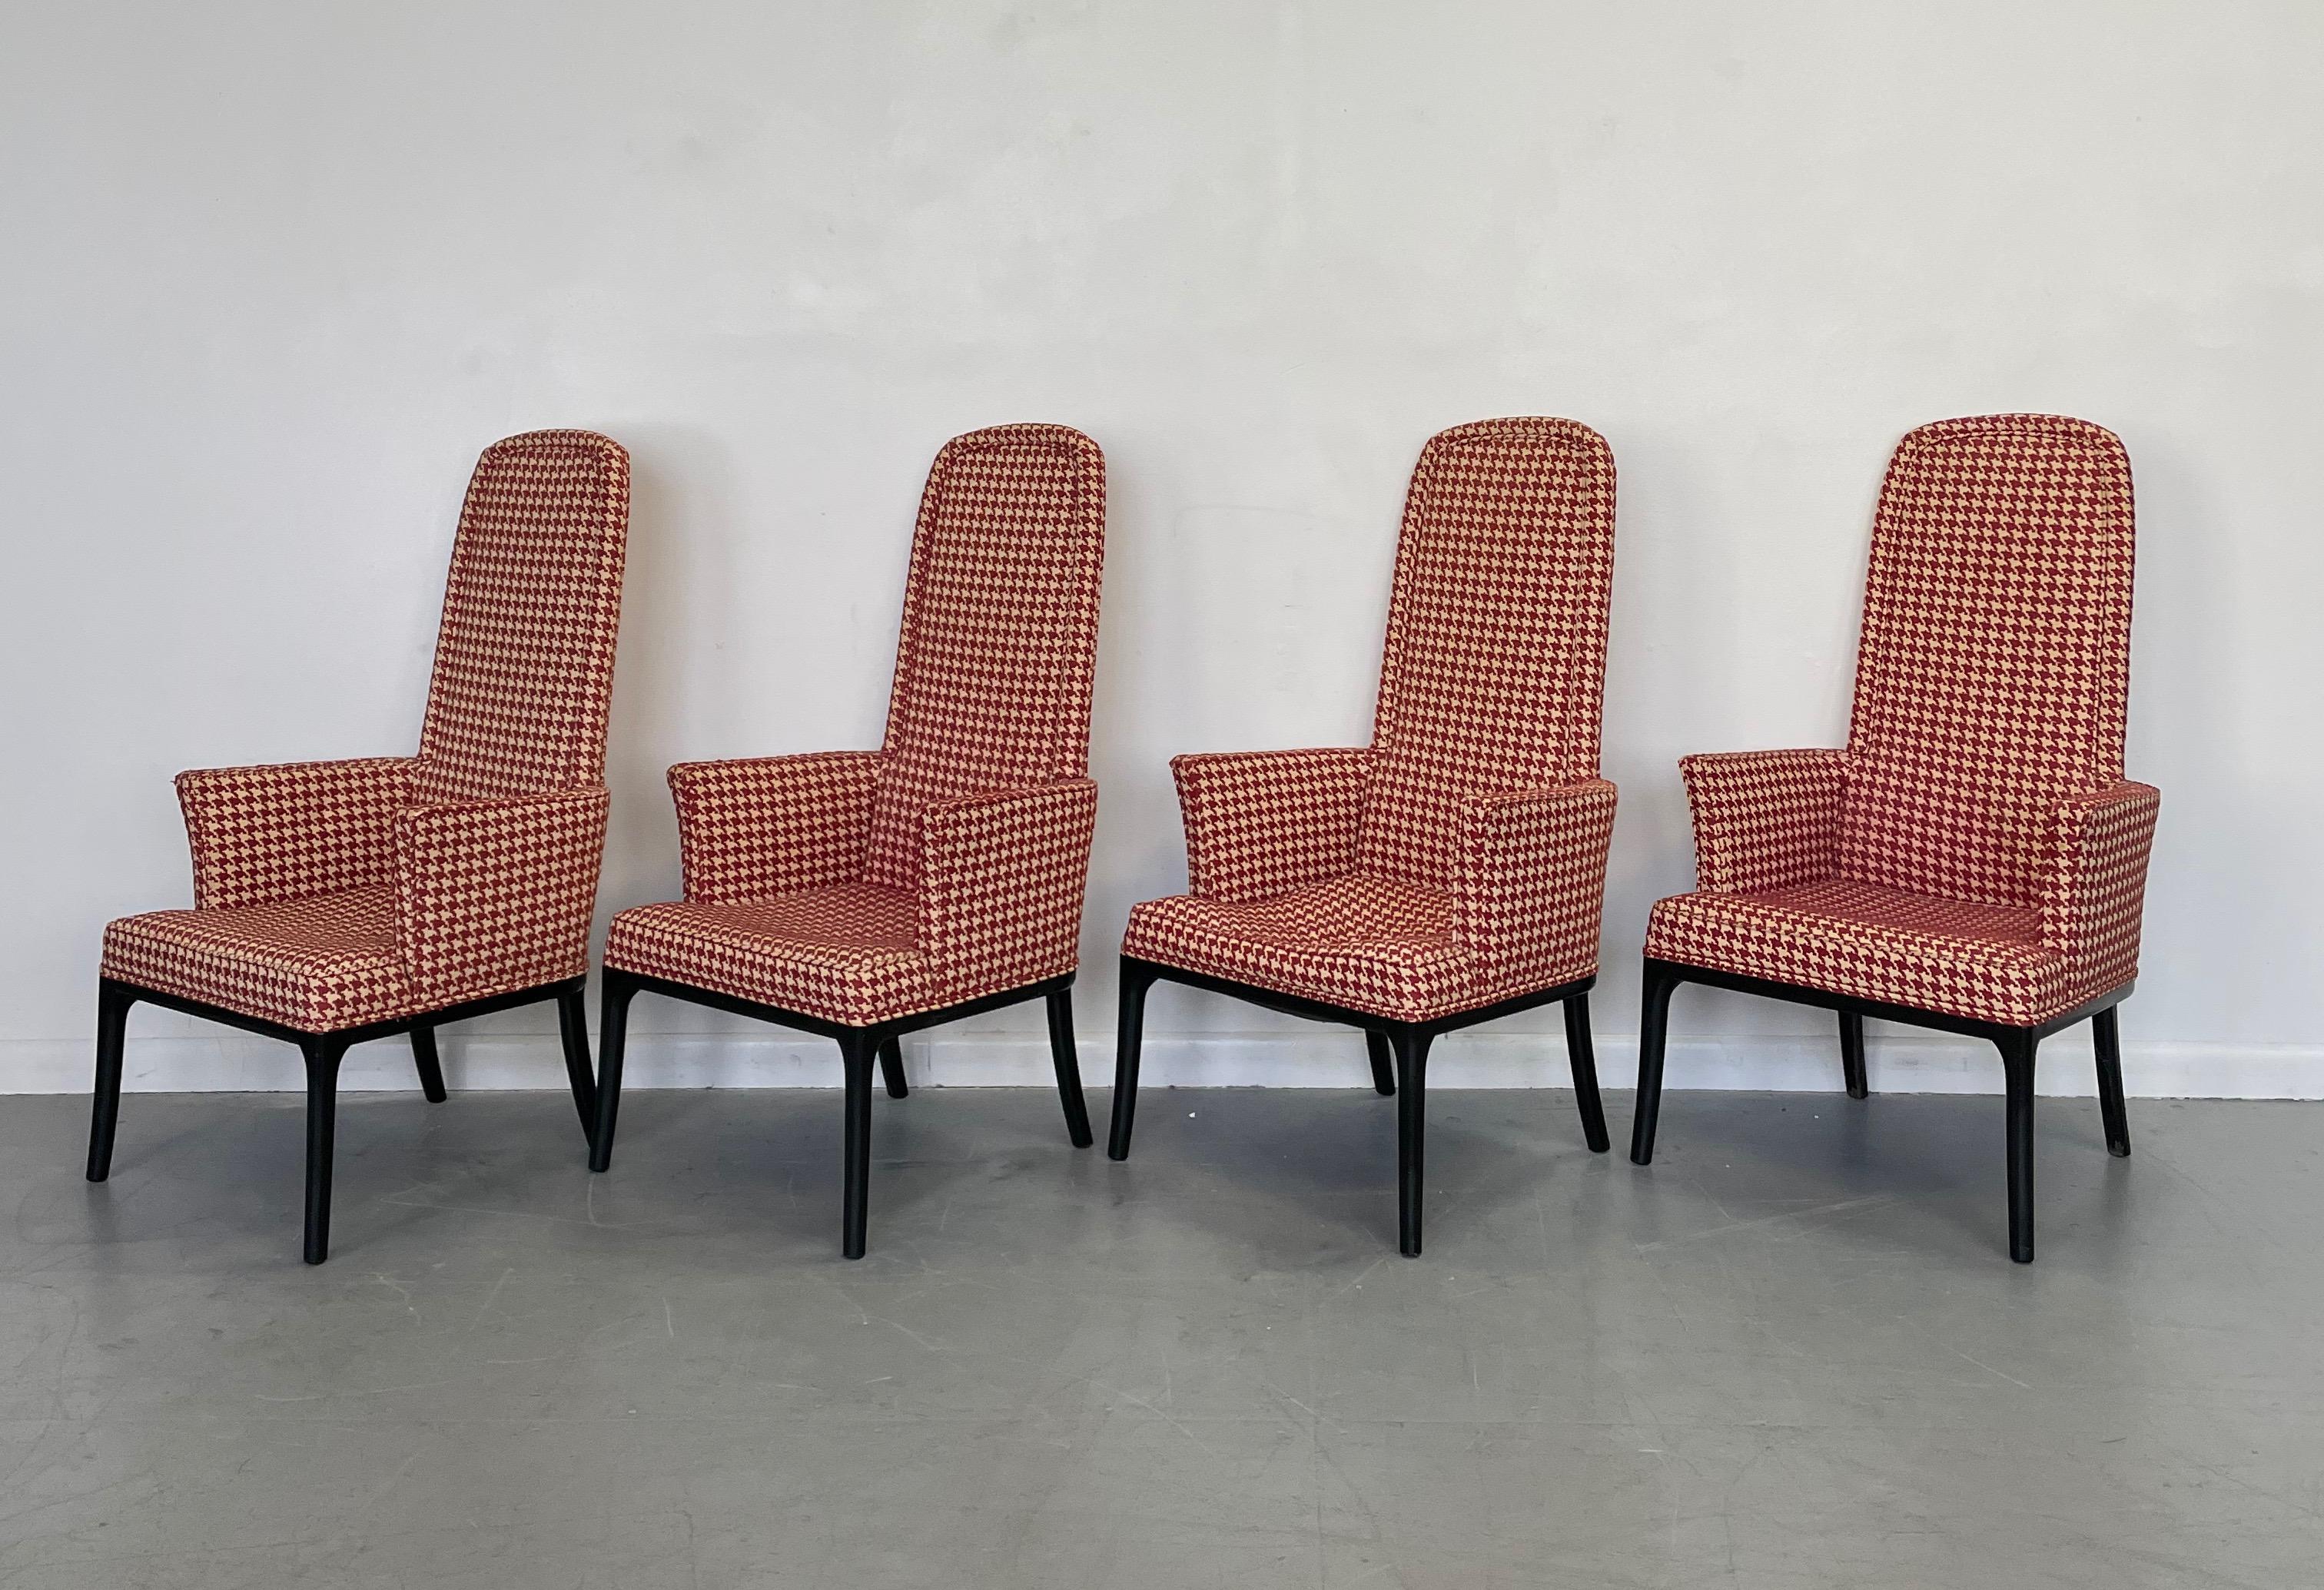 Élégant ensemble de quatre fauteuils à haut dossier qui peuvent être utilisés comme chaises de salle à manger ou de table de jeu. Un beau design avec des lacets fins et un dossier haut qui donne un beau profil. Ces chaises ont le tissu et la